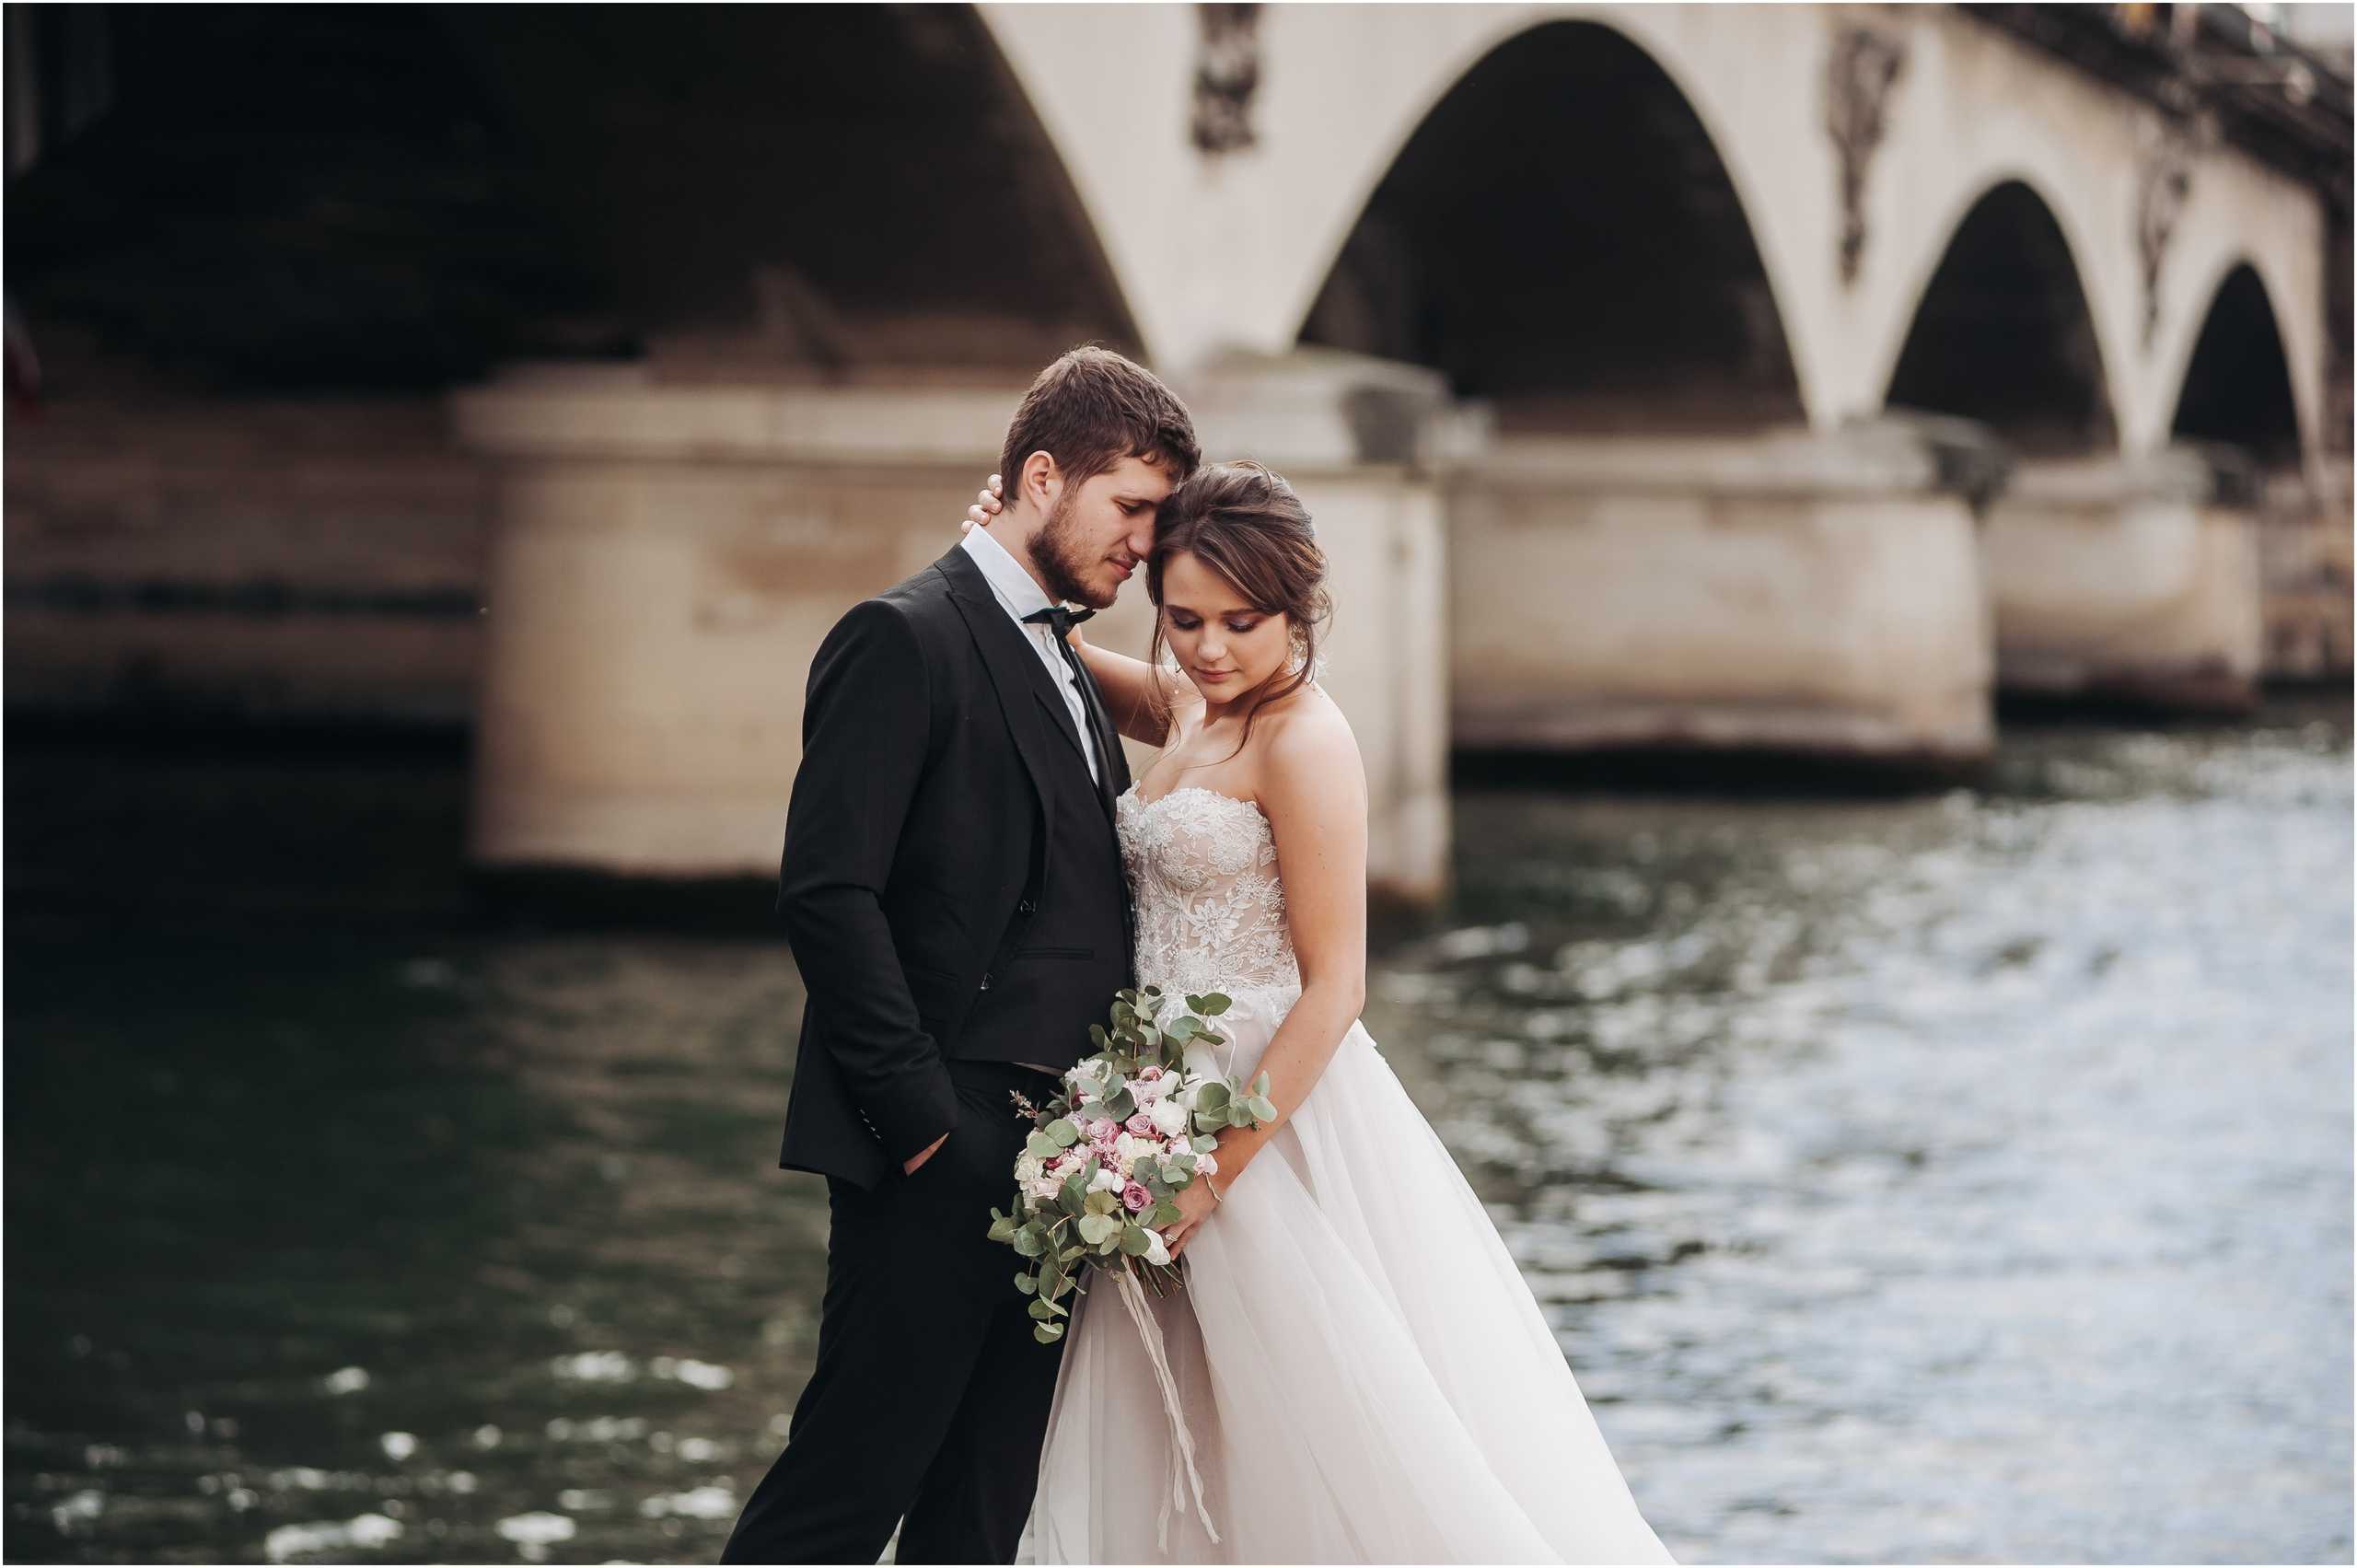 Обработка свадебных фотографий в фотошопе позволит убрать любые недостатки Узнайте как с помощью графического редактора сделать снимки в стиле винта